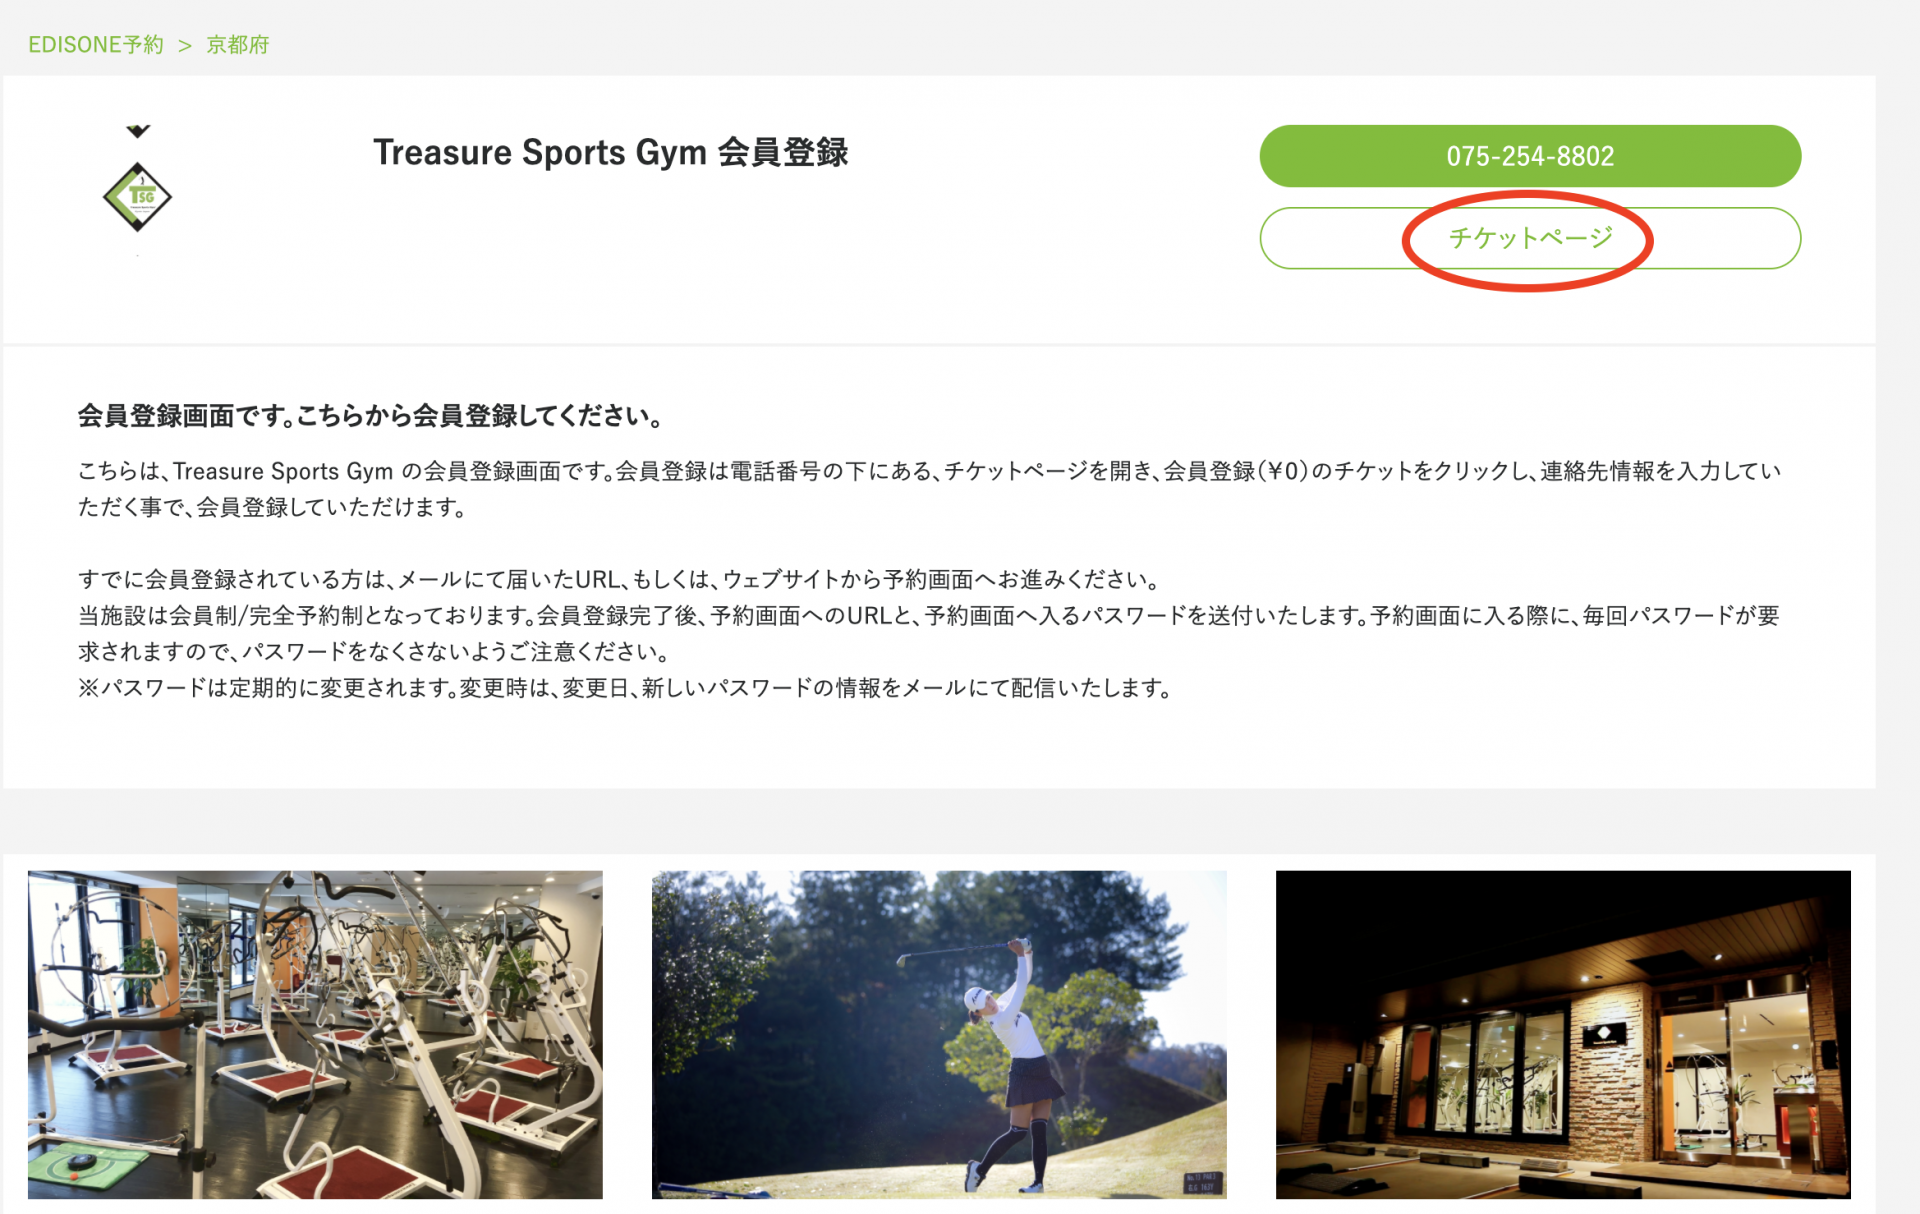 トレジャースポーツジム 会員登録方法 手順説明 Treasuresports Gym